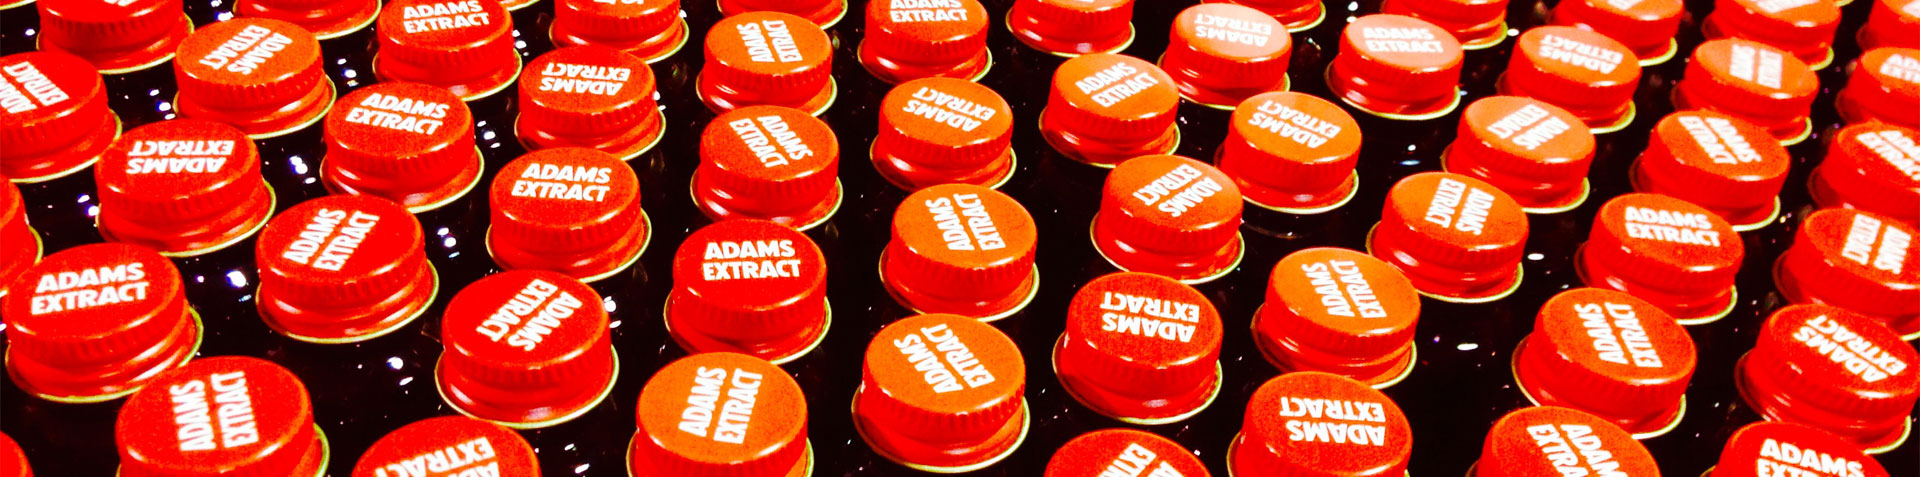 Adams Extract Bottle Caps